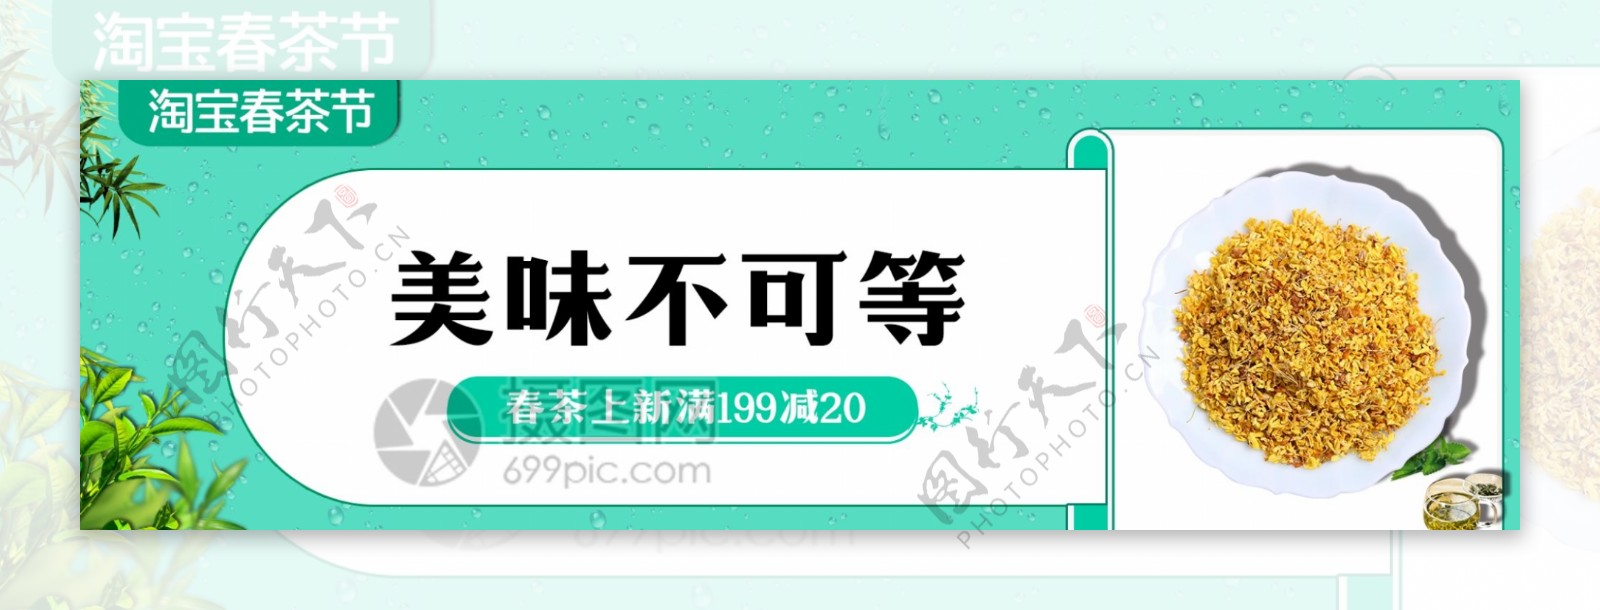 春茶节电商banner